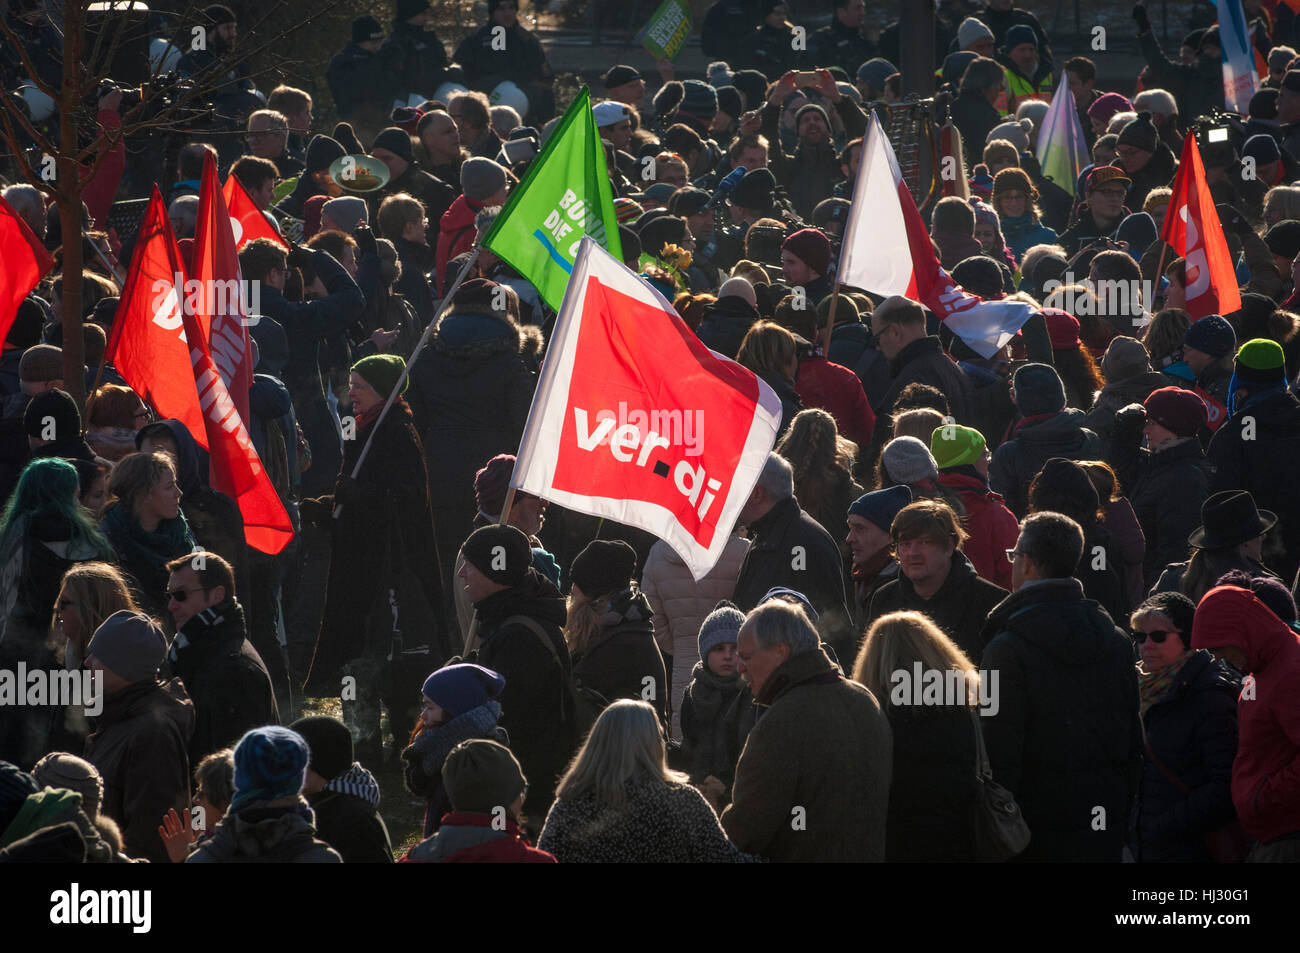 Unos 3 mil manifestantes se reunieron en Koblenz, Alemania, para protestar contra la reunión de extrema derecha de Europa. Foto de stock